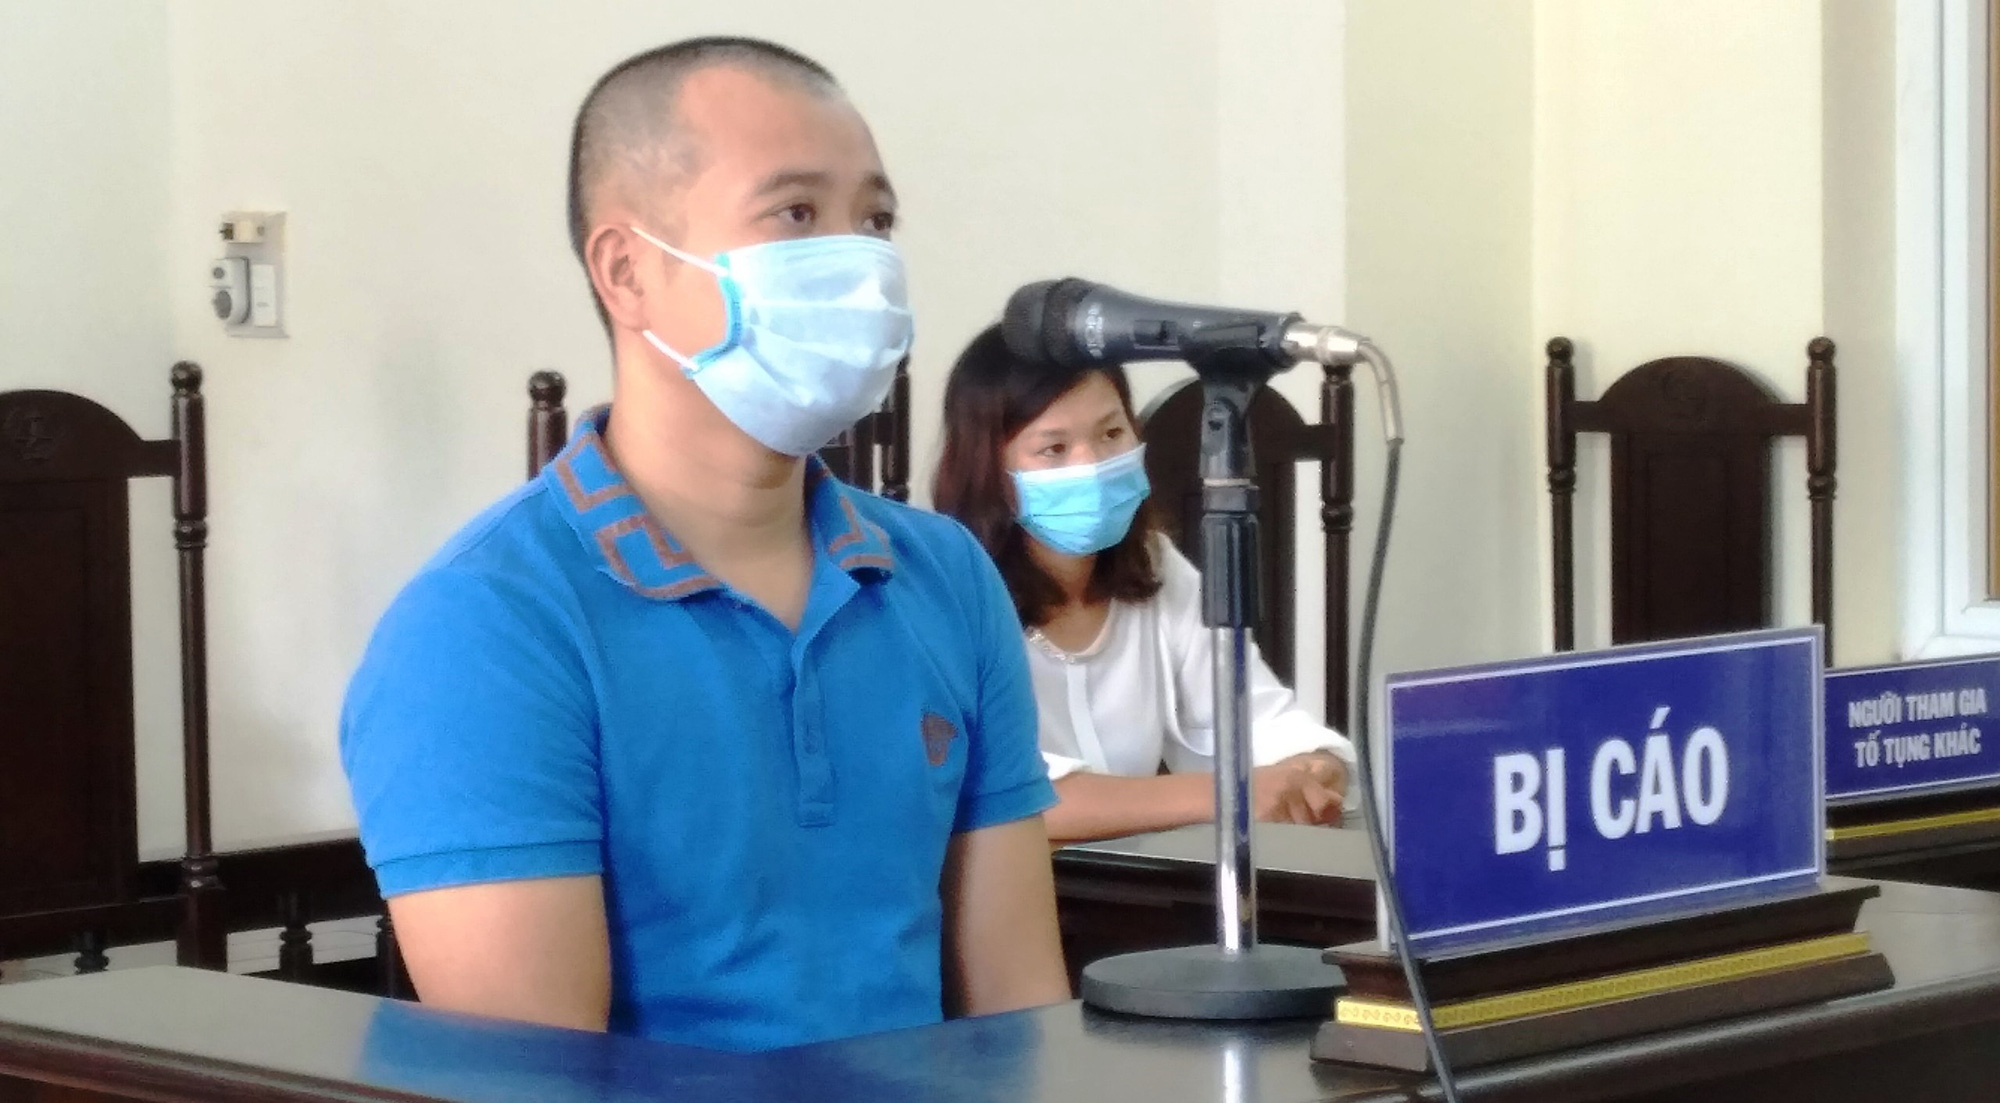 Quảng Ninh: Chống người thi hành công vụ, nhận 24 tháng tù giam - Ảnh 1.